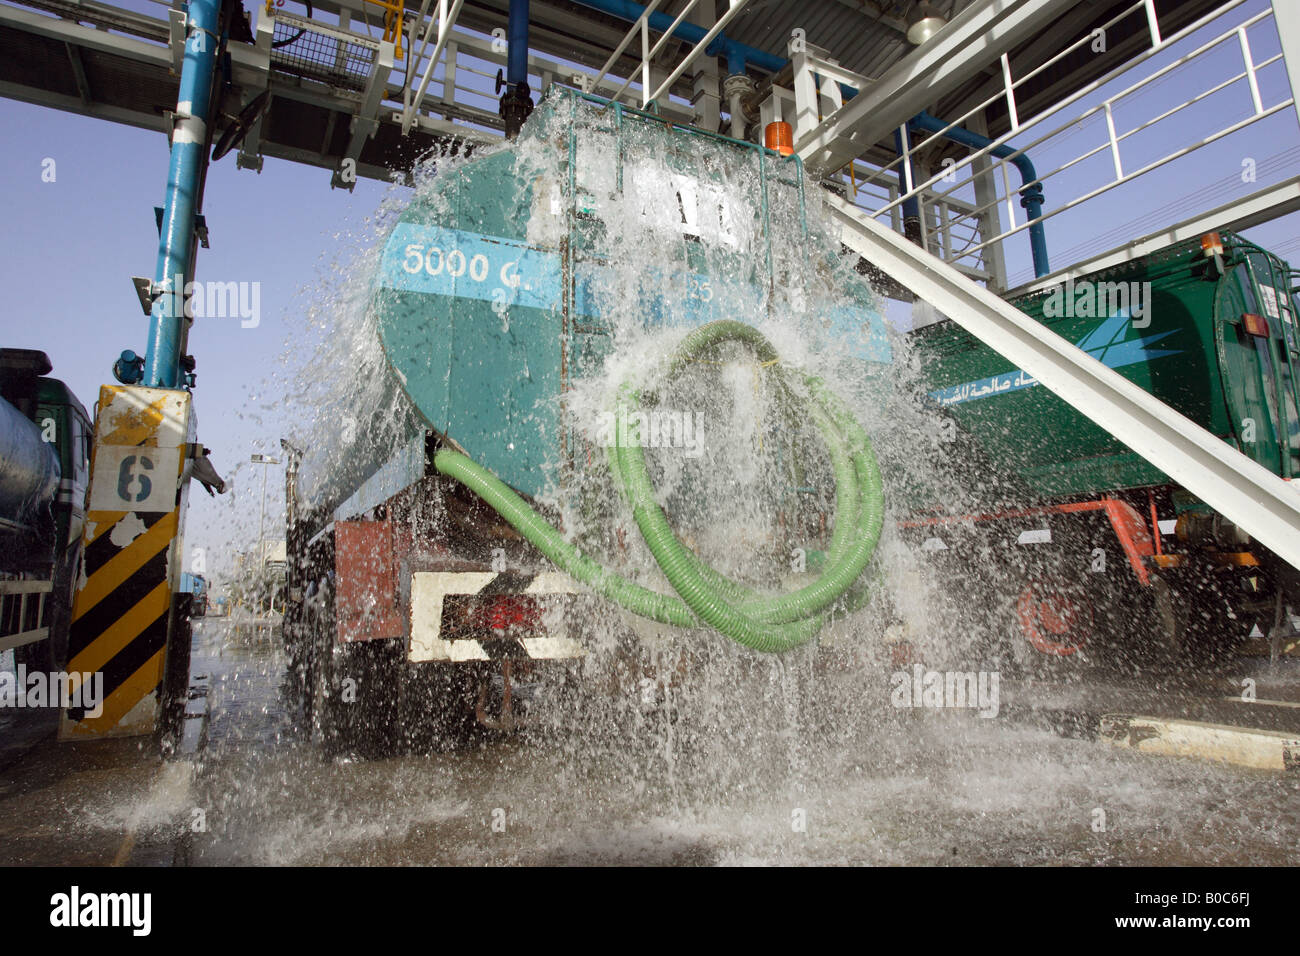 Un camion di acqua essendo caricato con acqua, Dubai, Emirati Arabi Uniti Foto Stock